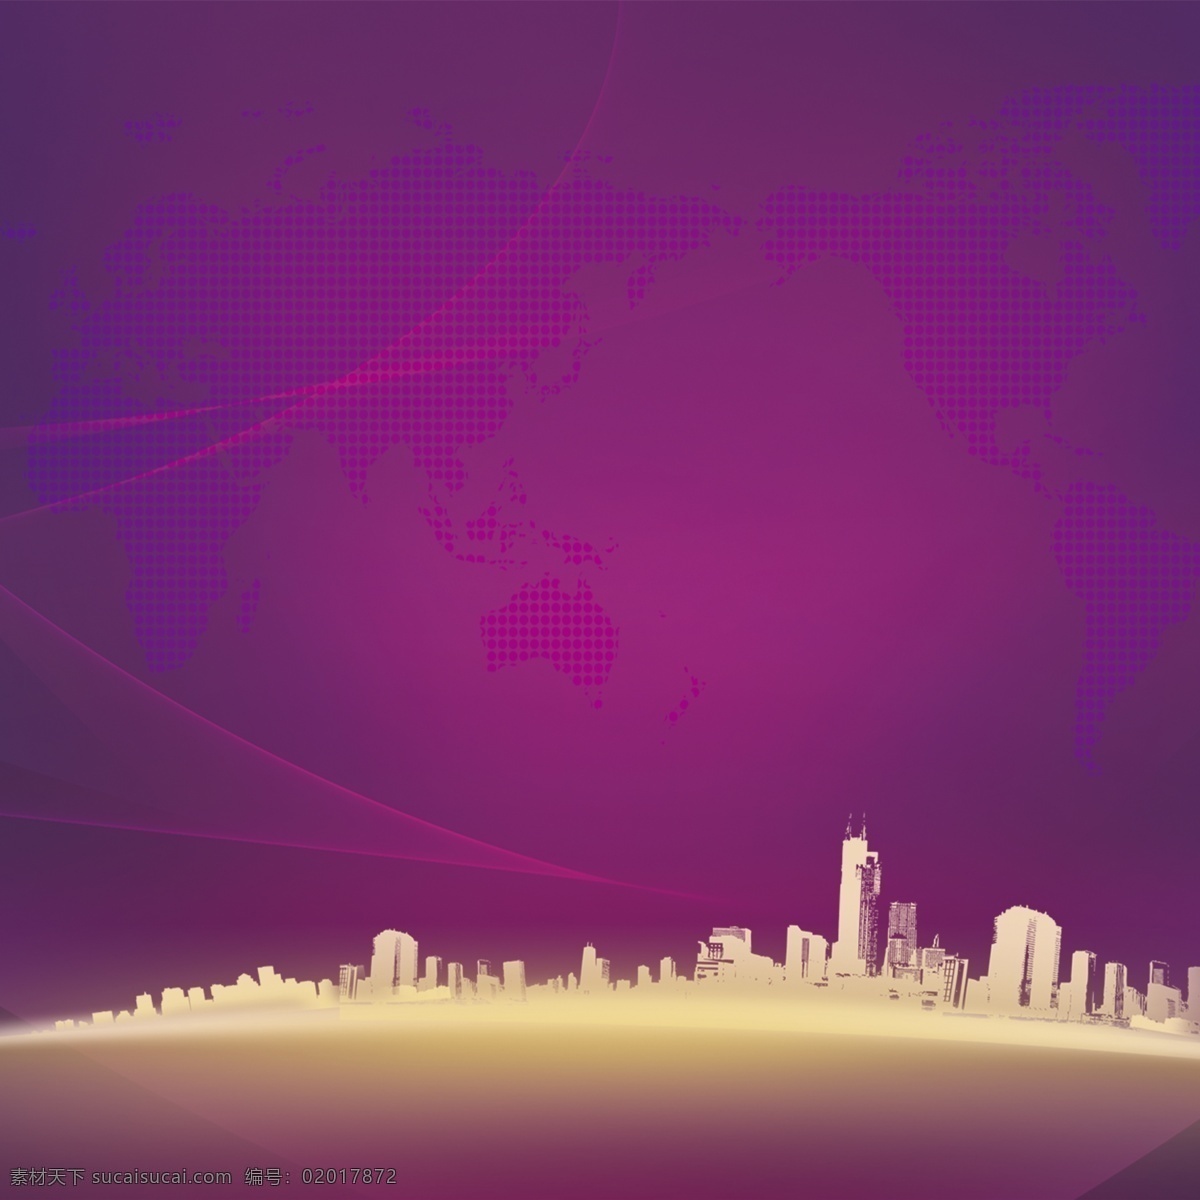 城市背景素材 城市 光晕 线条 紫色背景